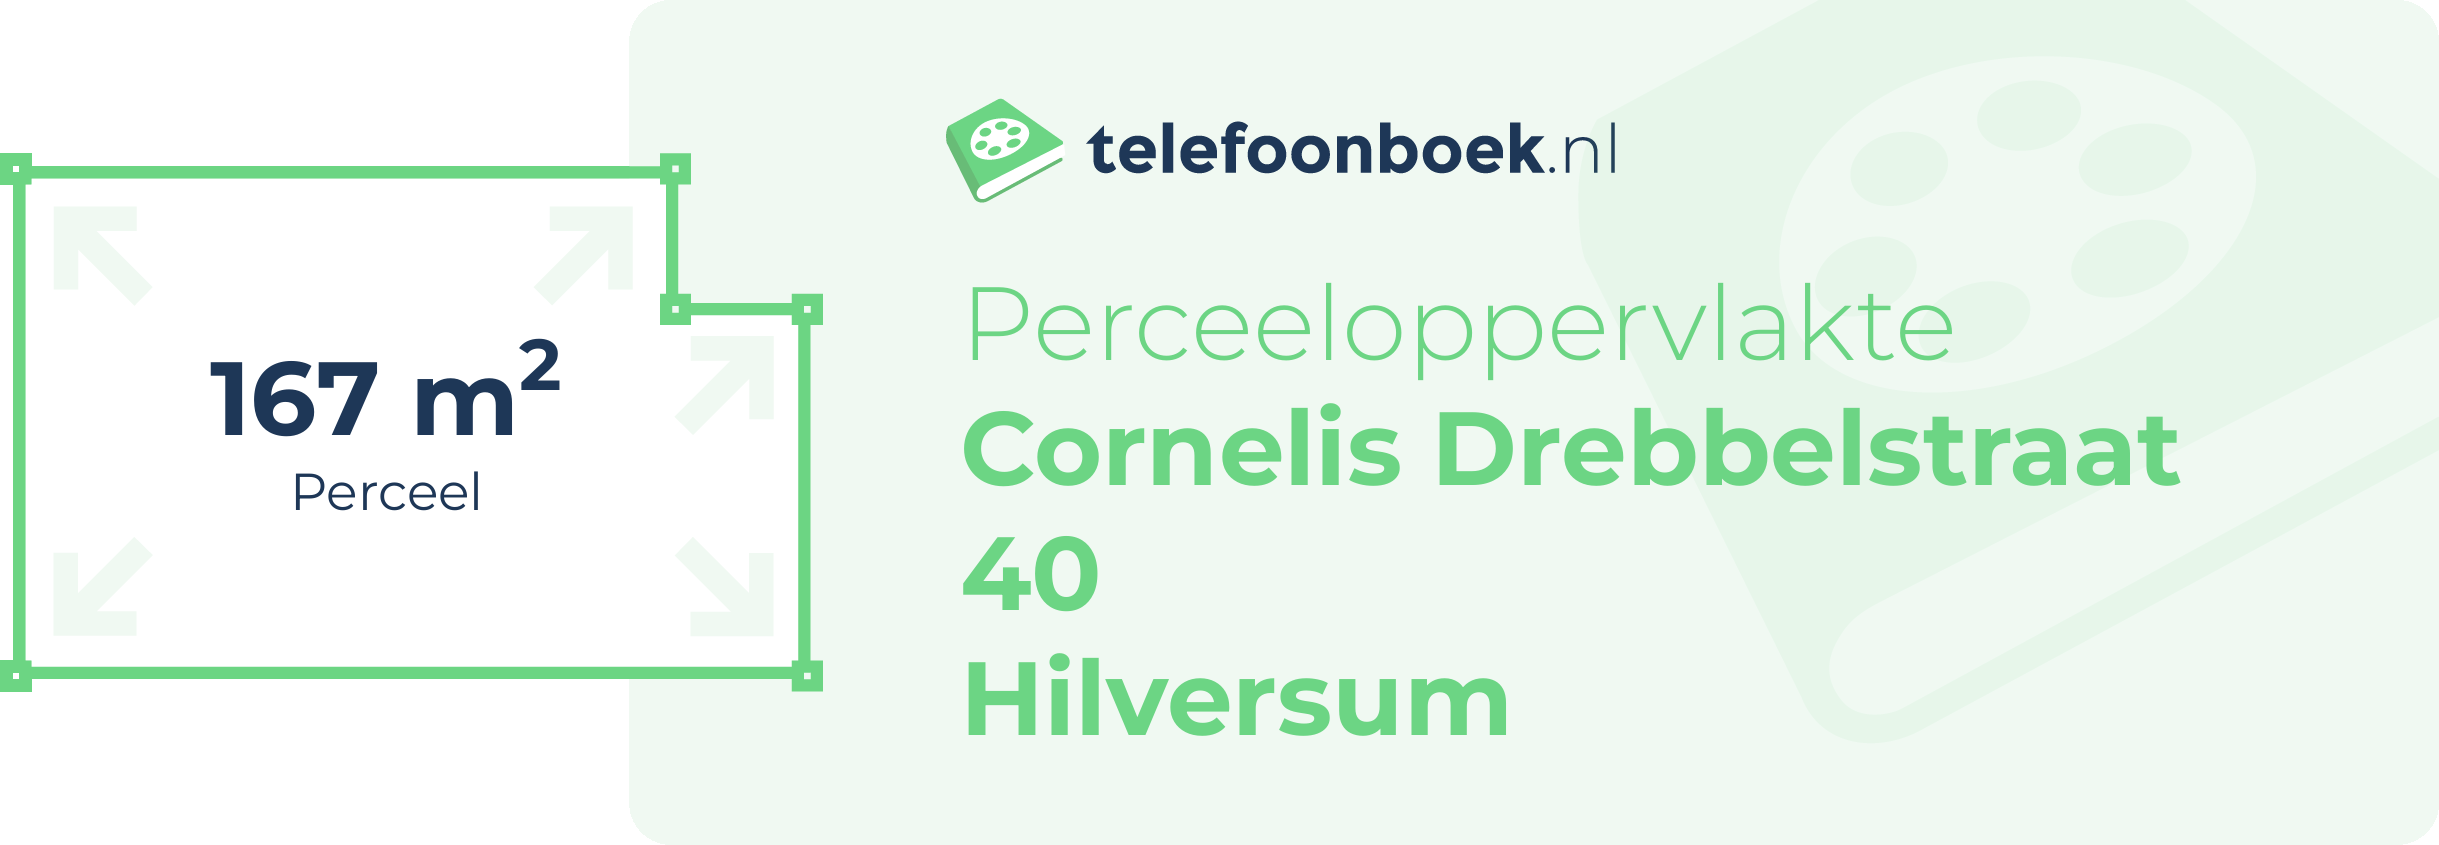 Perceeloppervlakte Cornelis Drebbelstraat 40 Hilversum